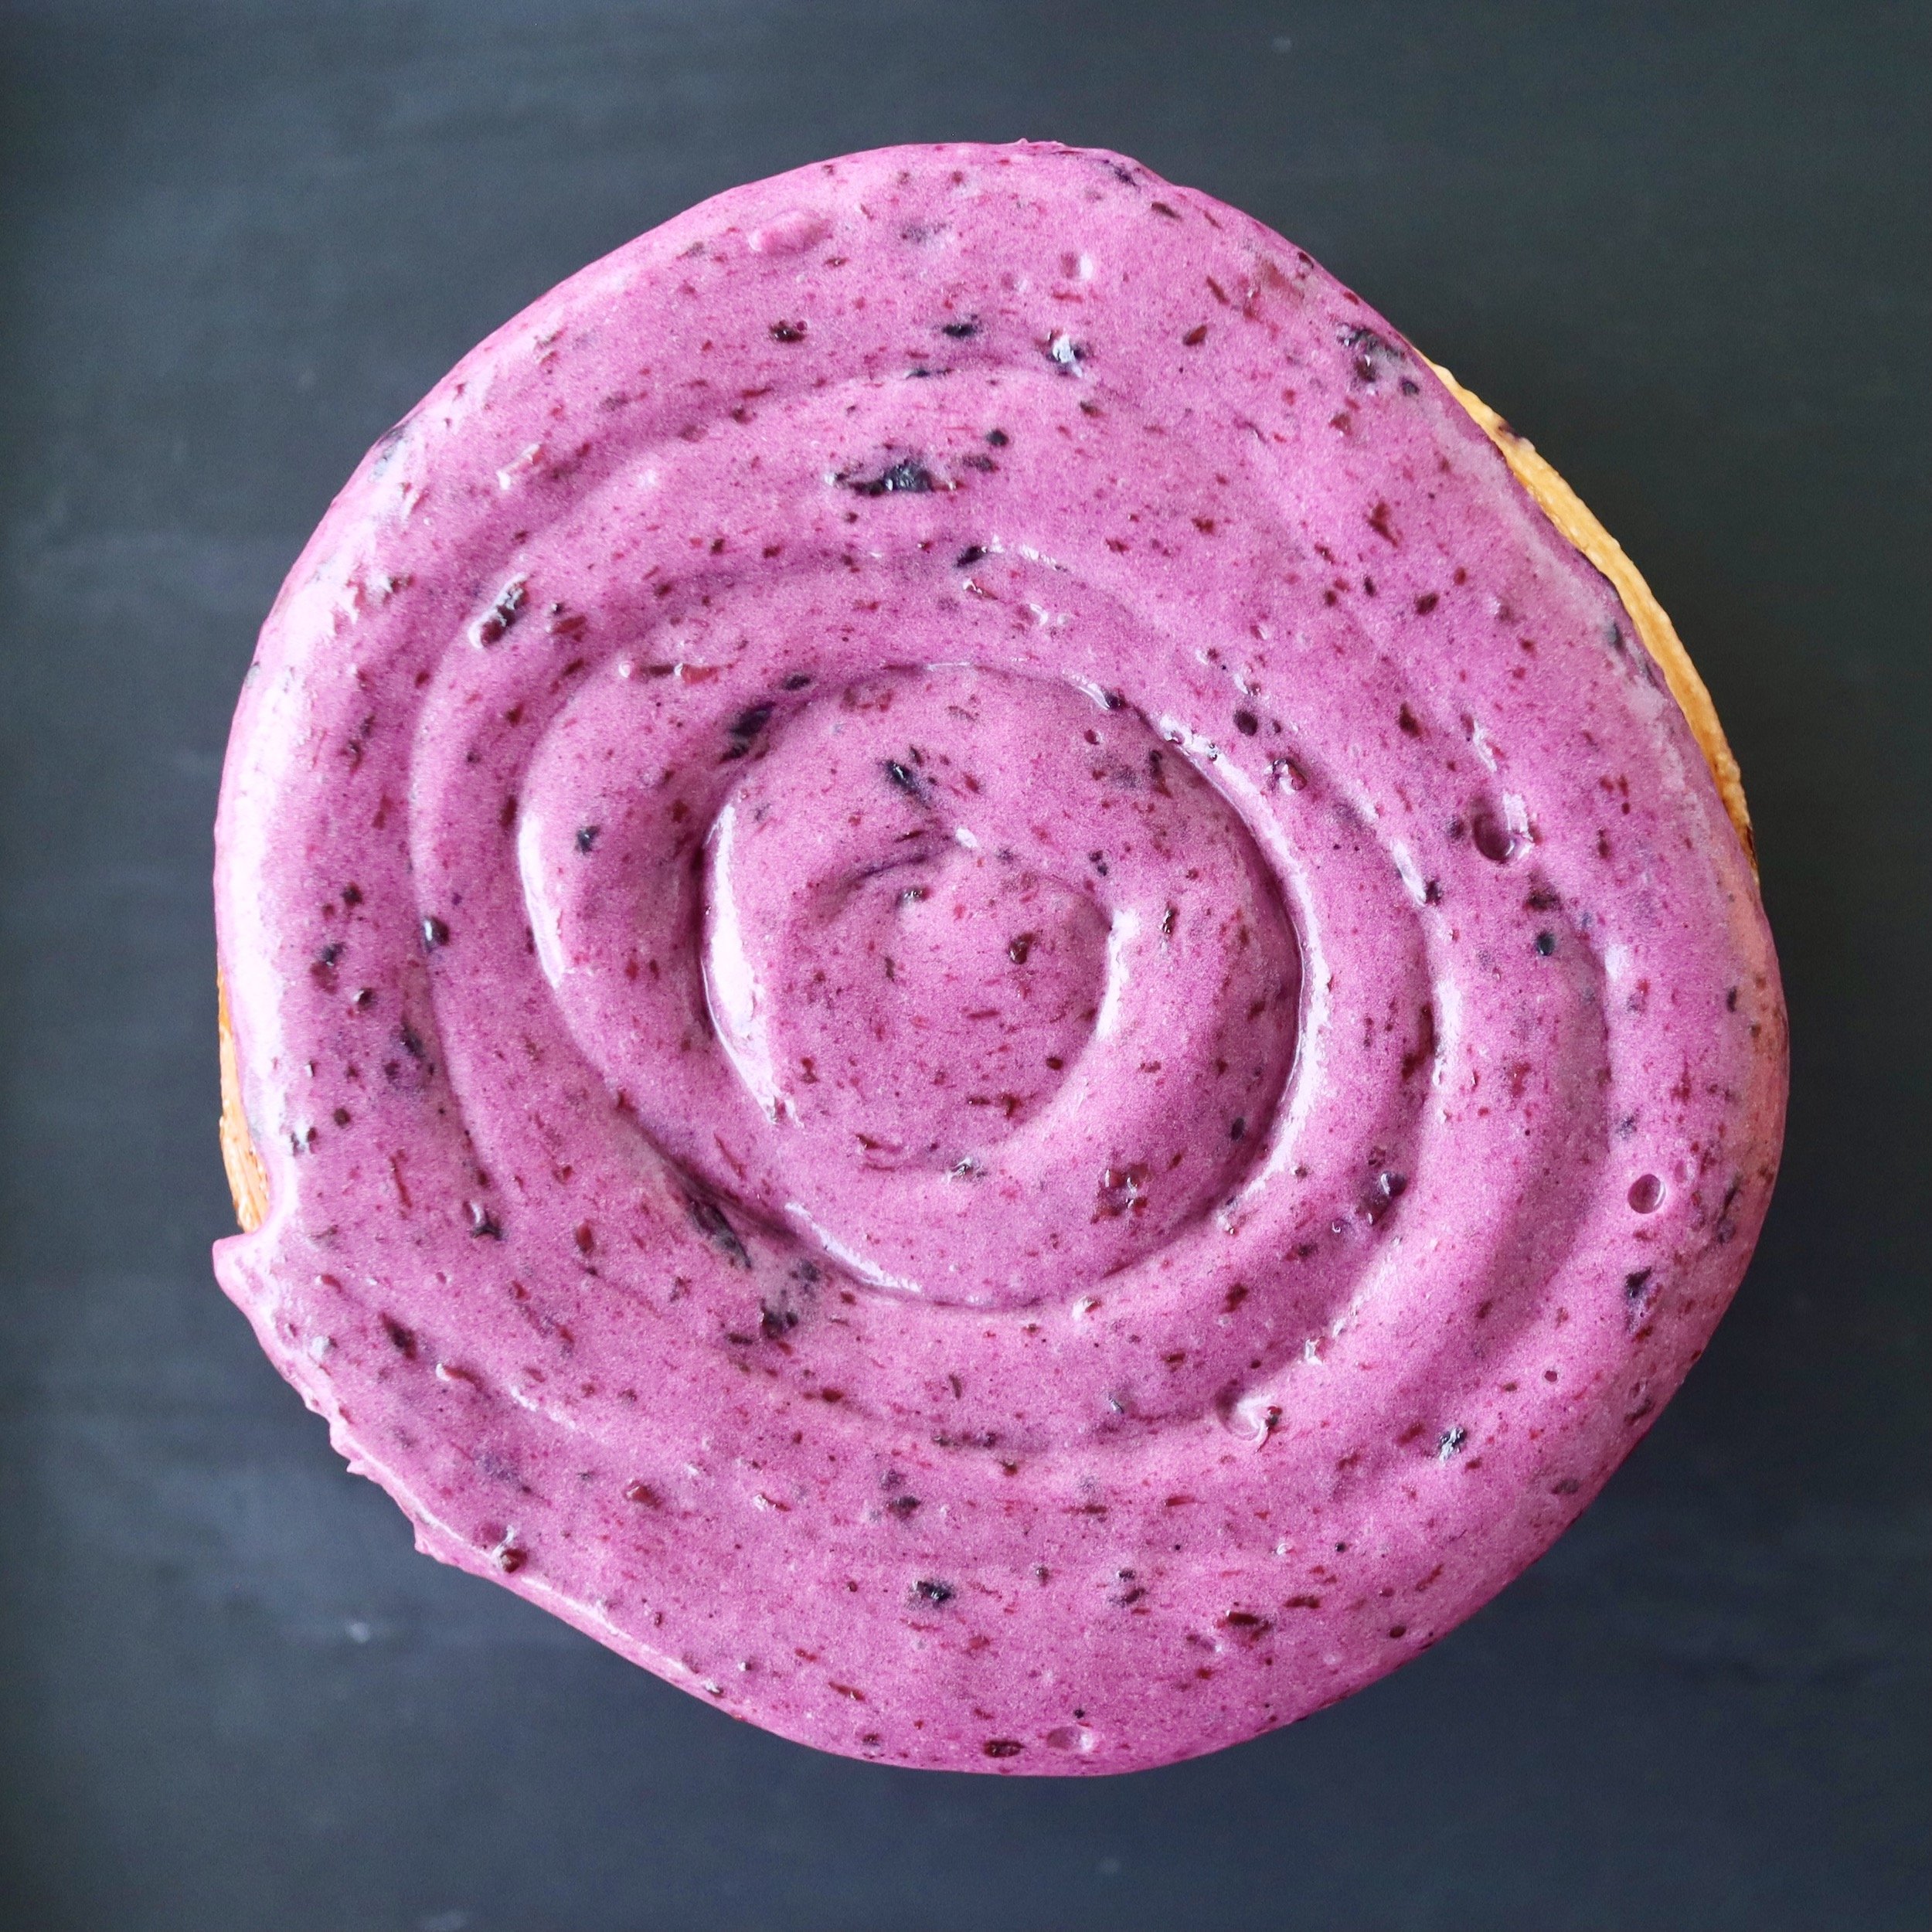 thisisfrankies-bakery-patisserie-blueberry-scroll.JPG